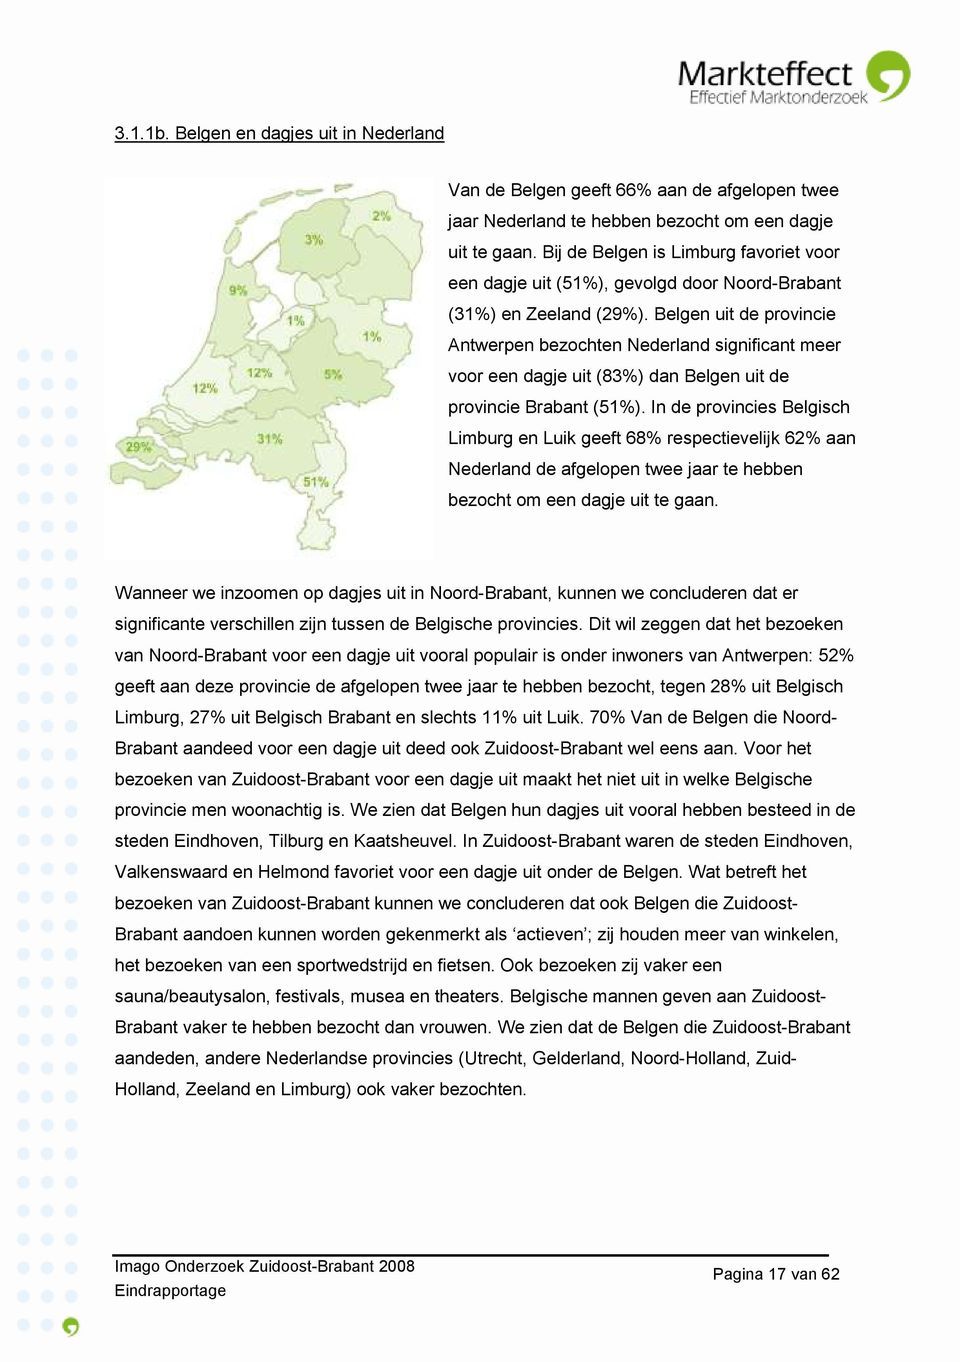 Belgen uit de provincie Antwerpen bezochten Nederland significant meer voor een dagje uit (83%) dan Belgen uit de provincie Brabant (51%).